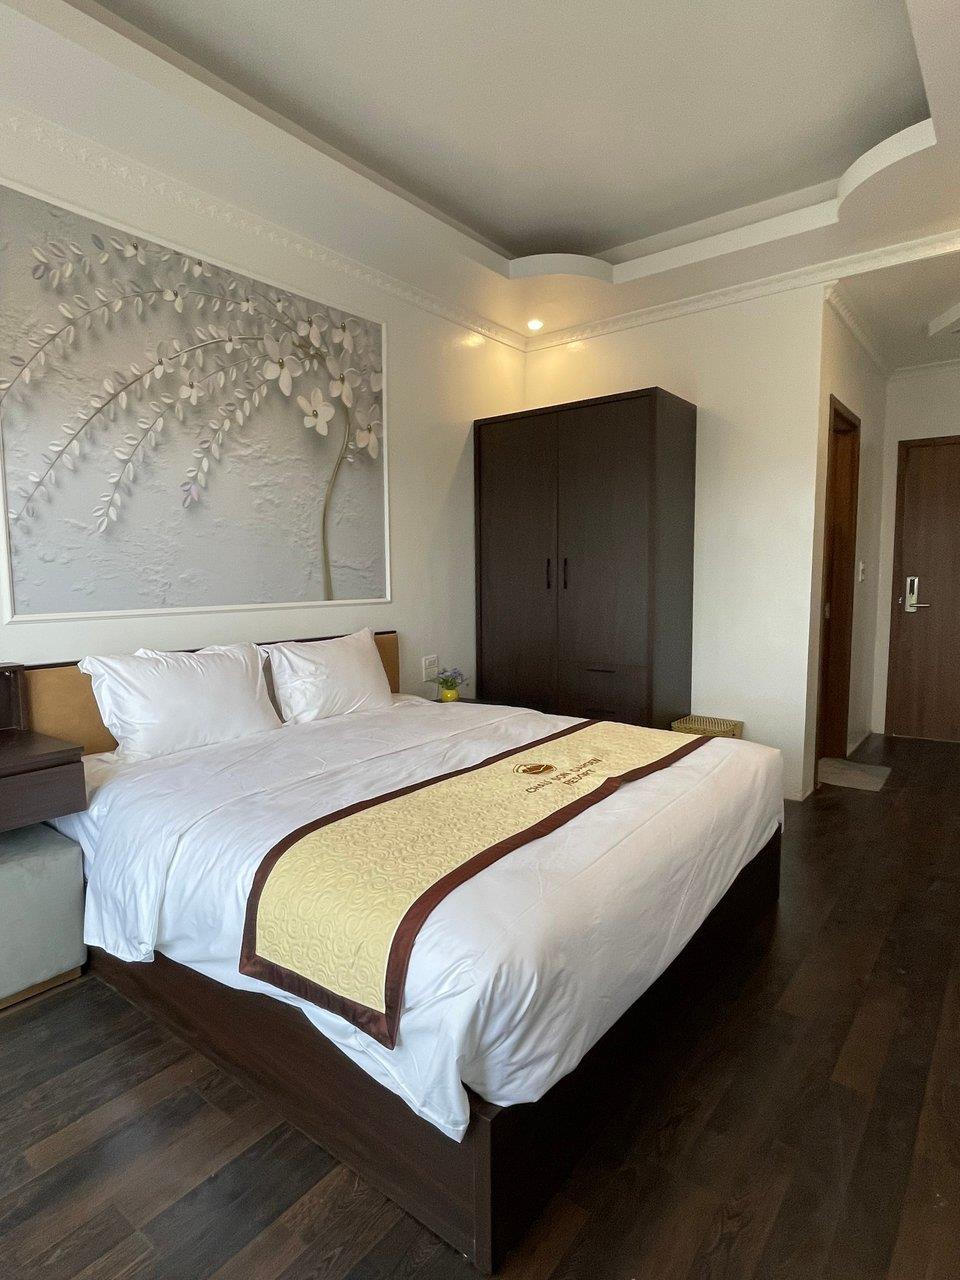 Deluxe Double Room - Châu Sơn Garden Resort